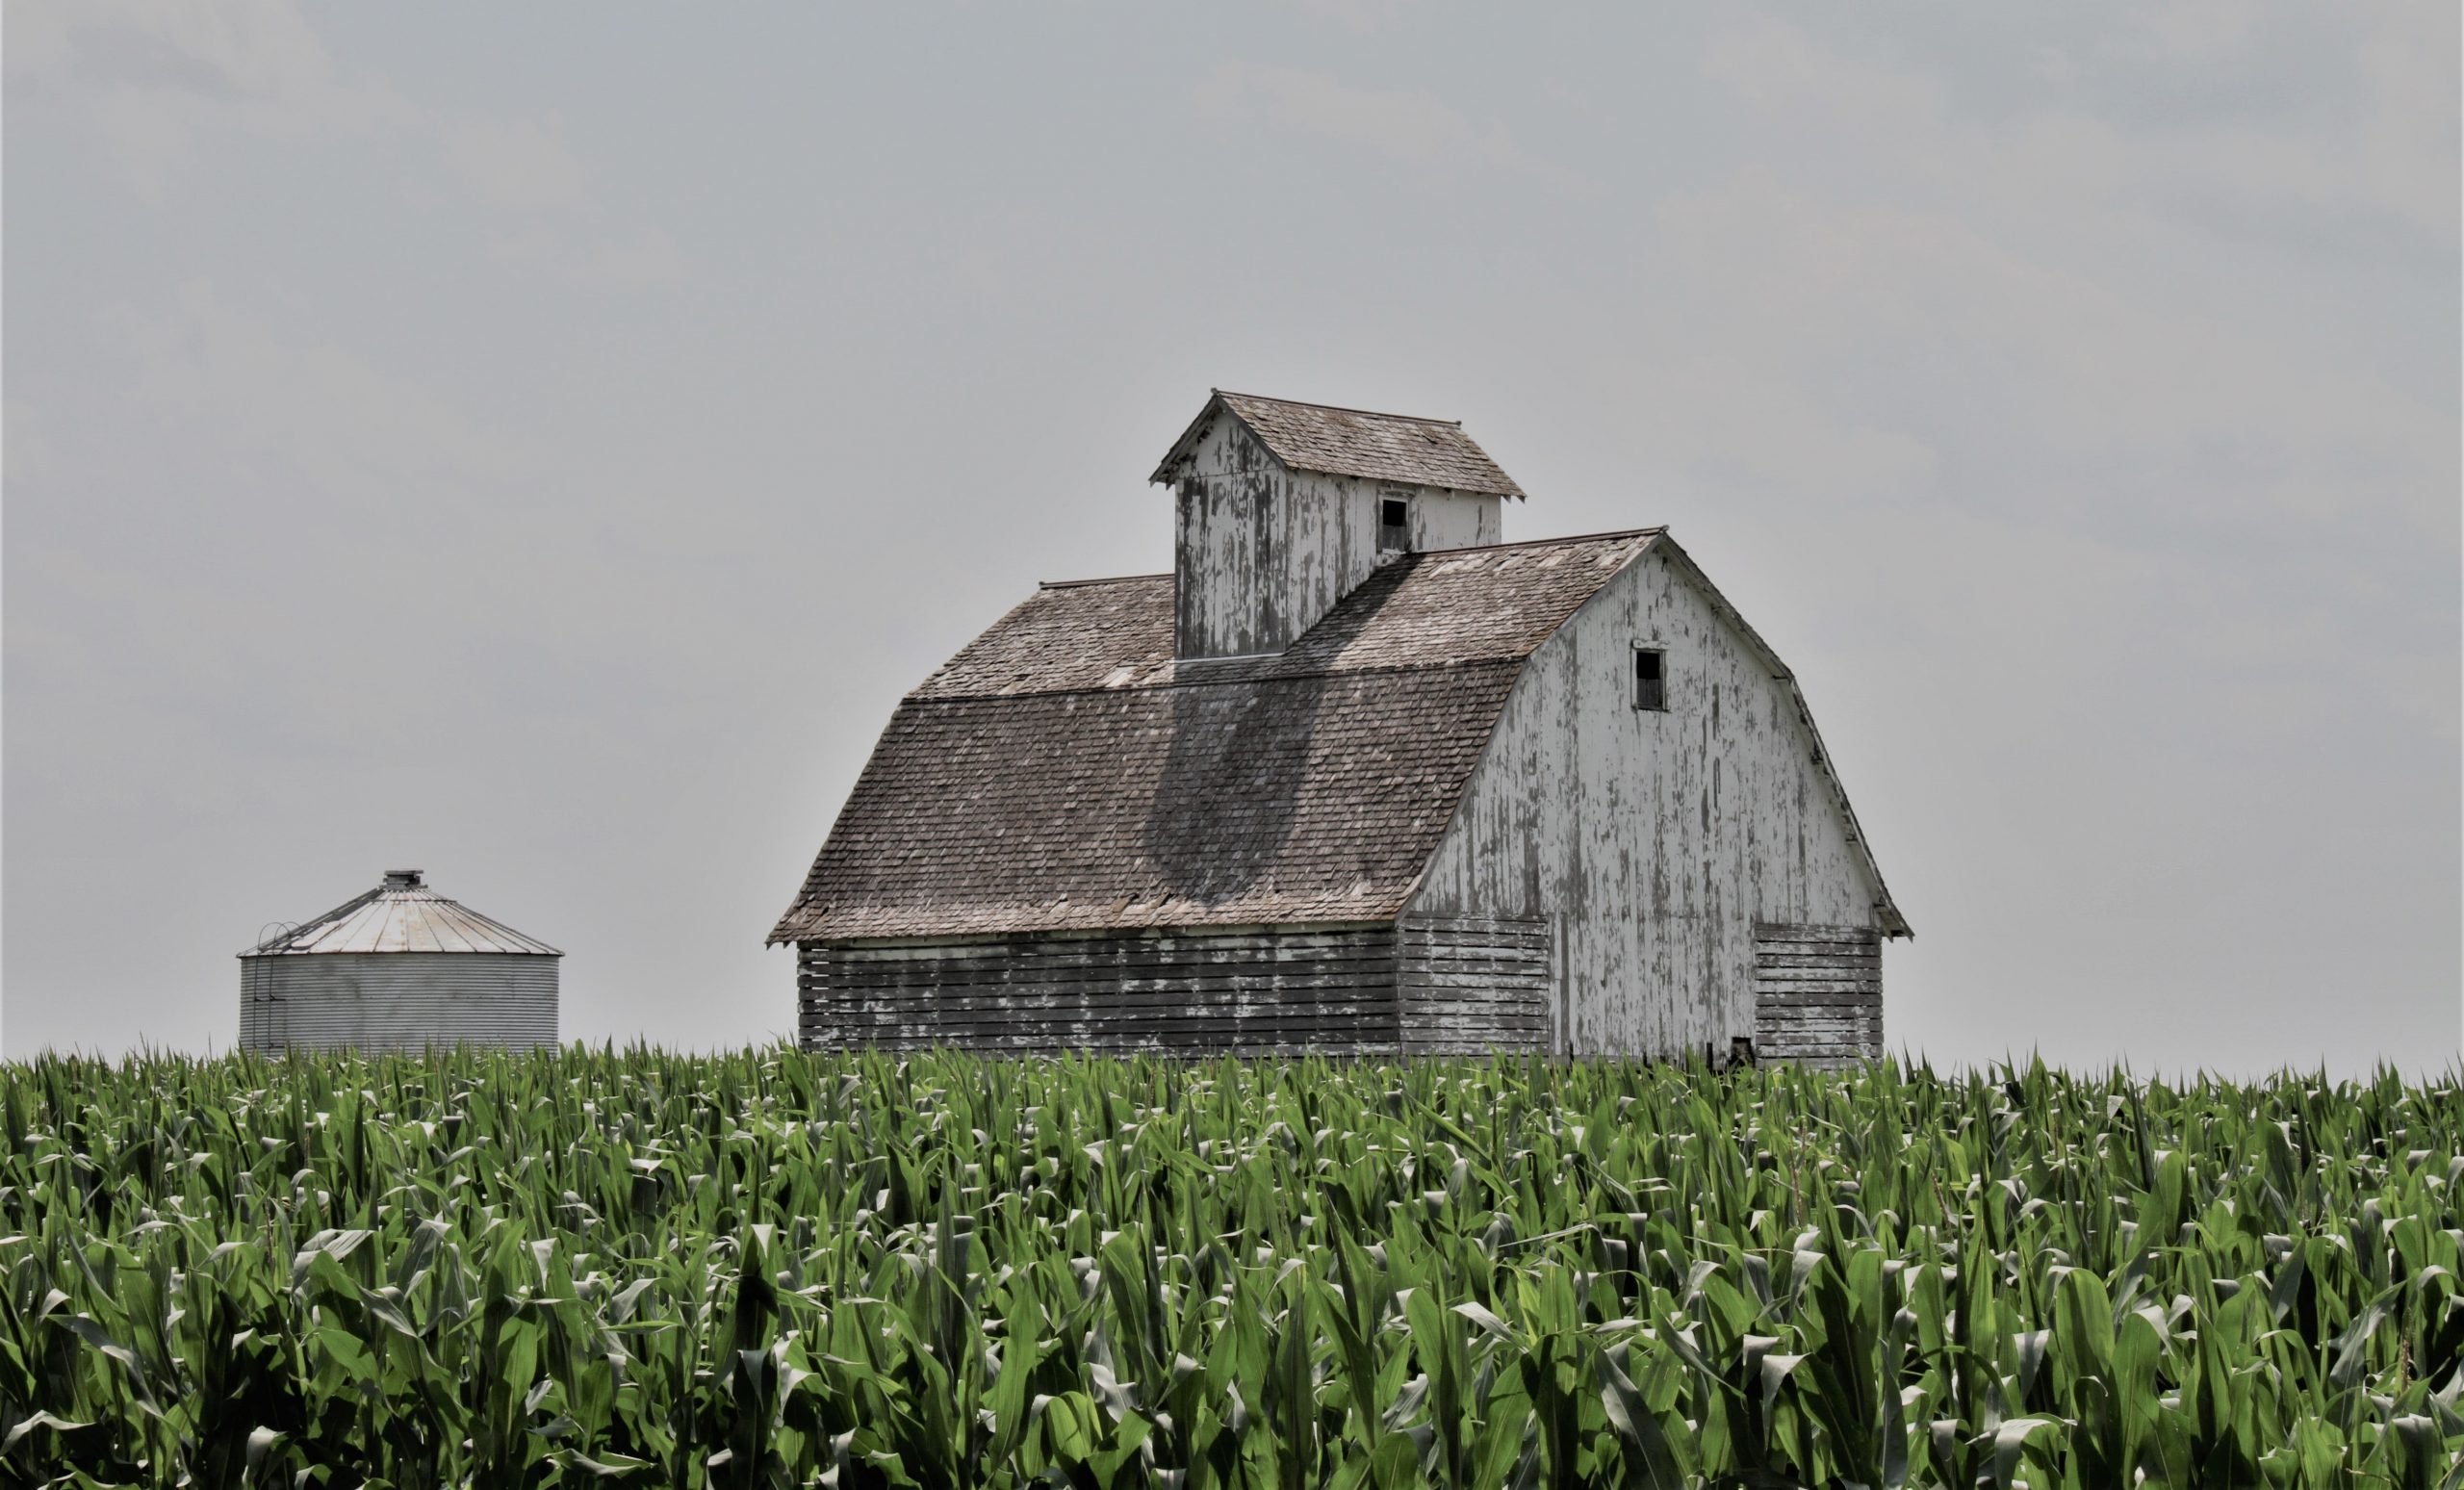 grain bin & old barn in cornfield